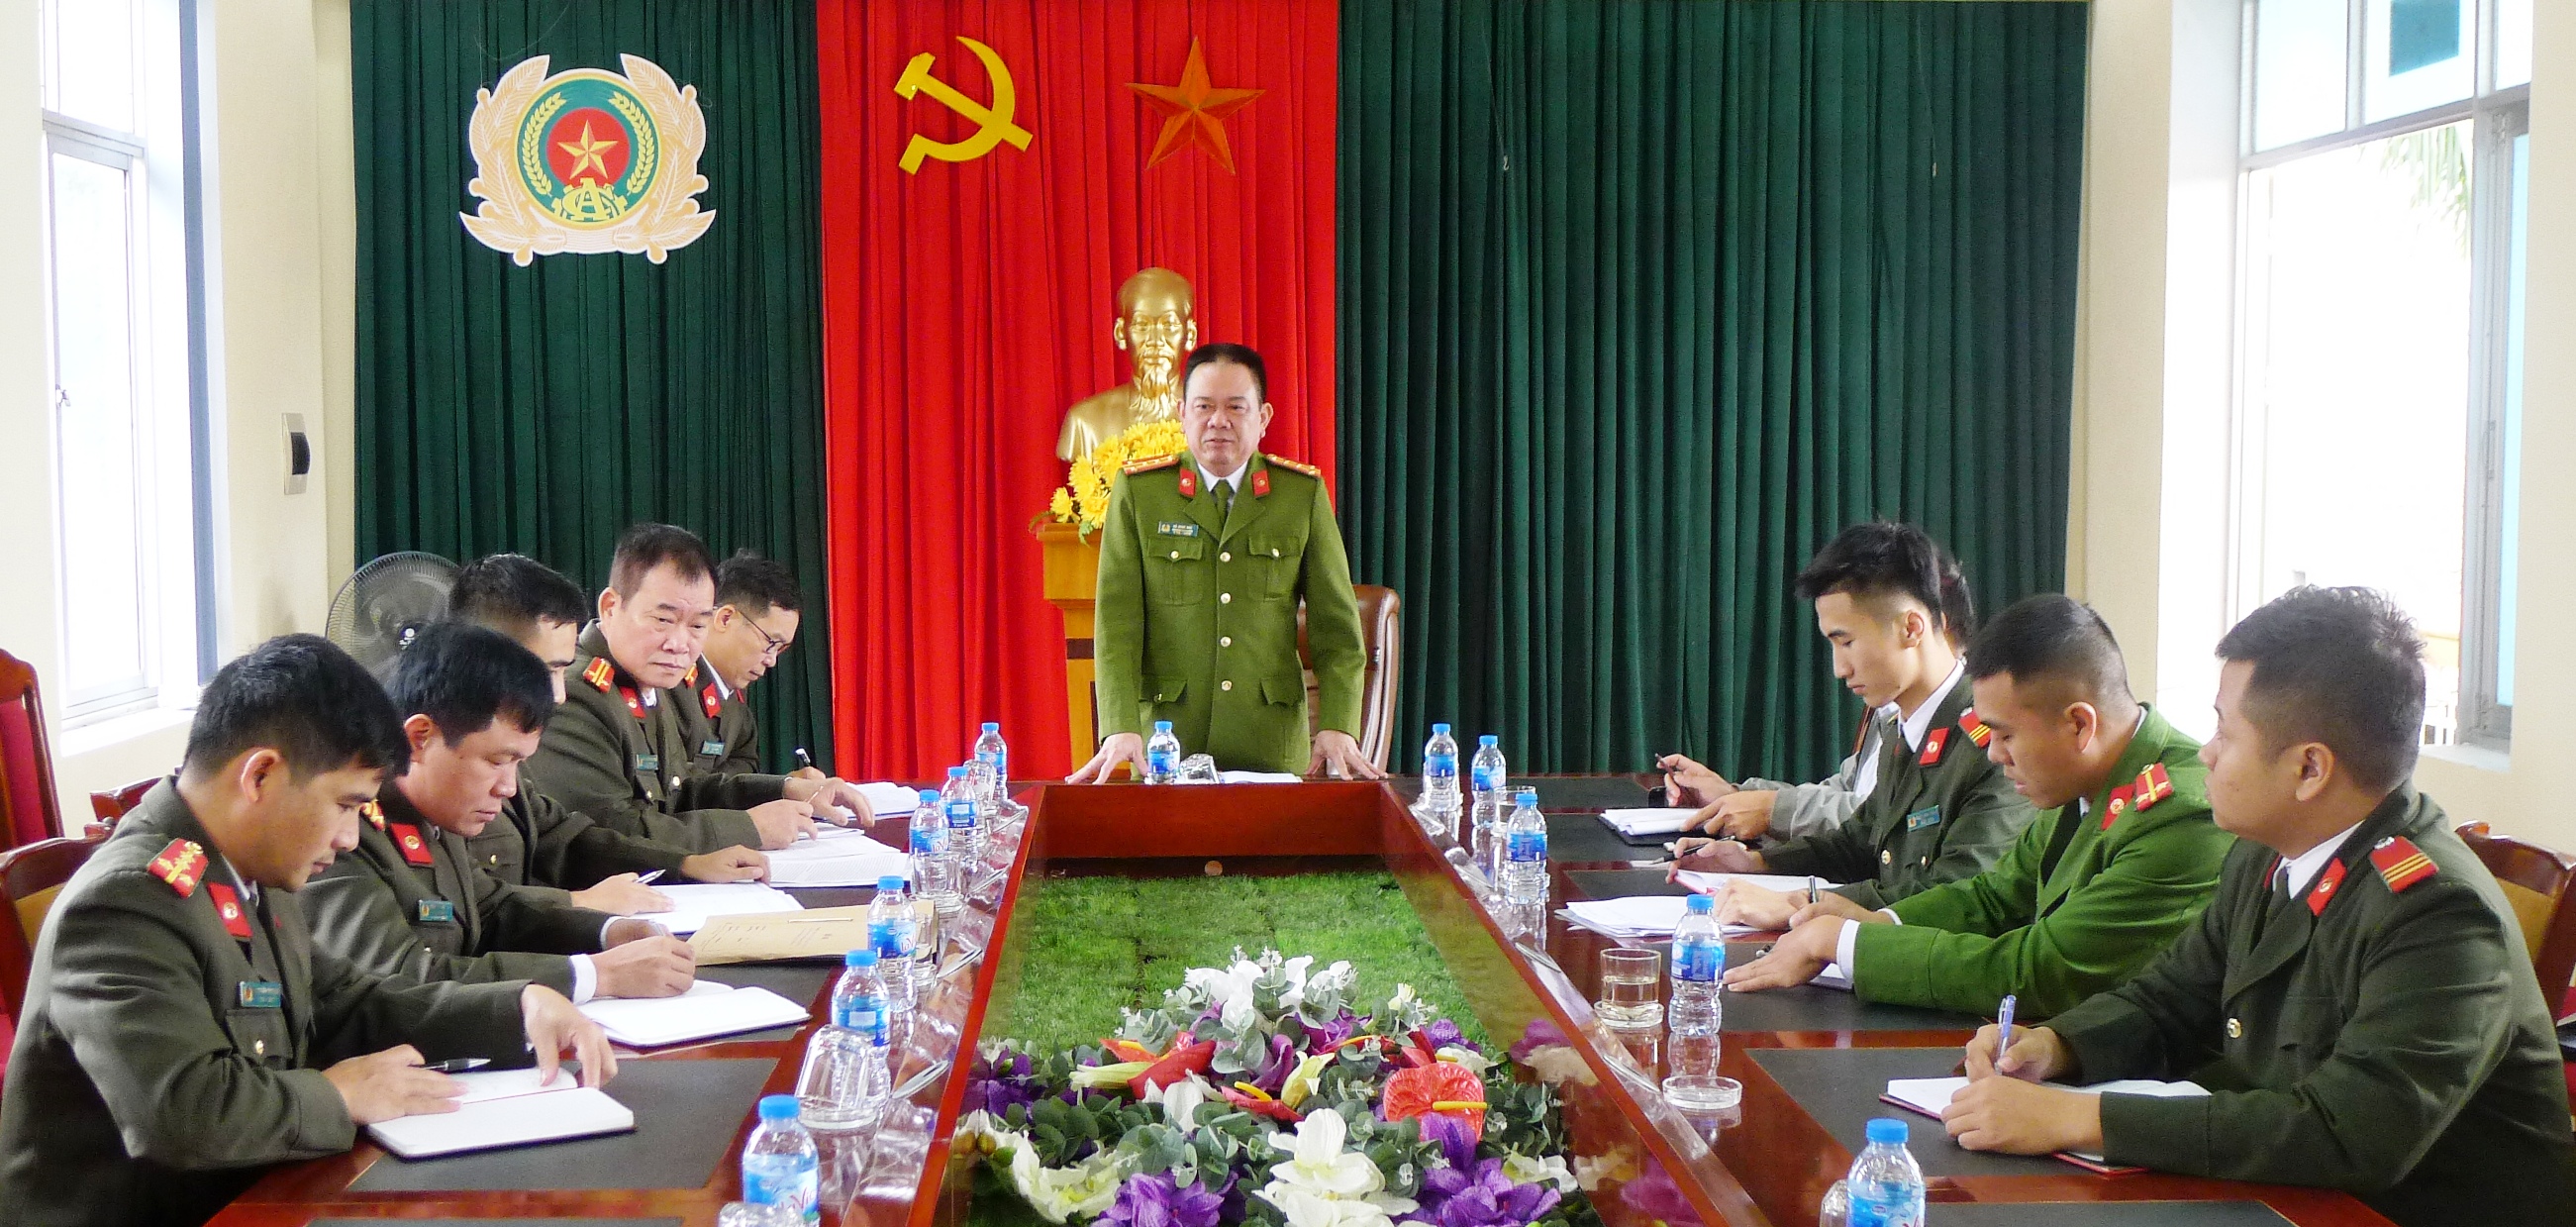 Đại tá Vũ Minh Đức - Trưởng Công an huyện Ba Chẽ chủ trì buổi họp giao ban hàng tuần - ảnh: HM